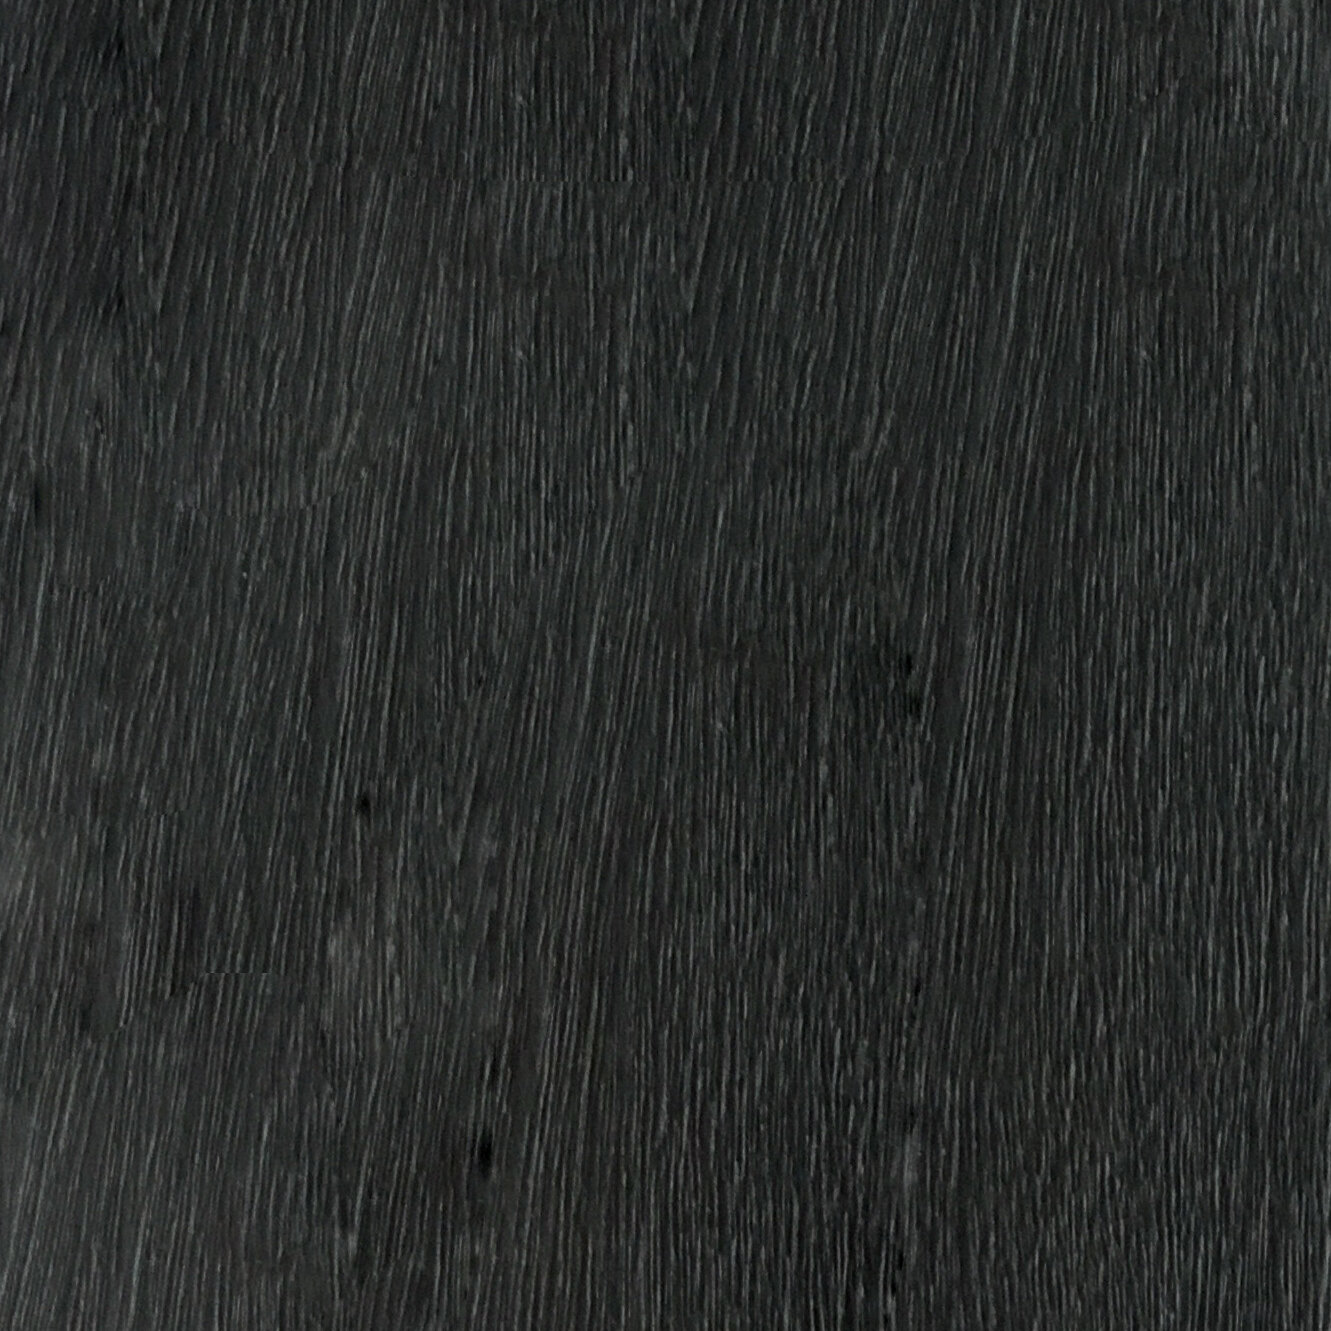 BOIS-Assamela noir.jpg